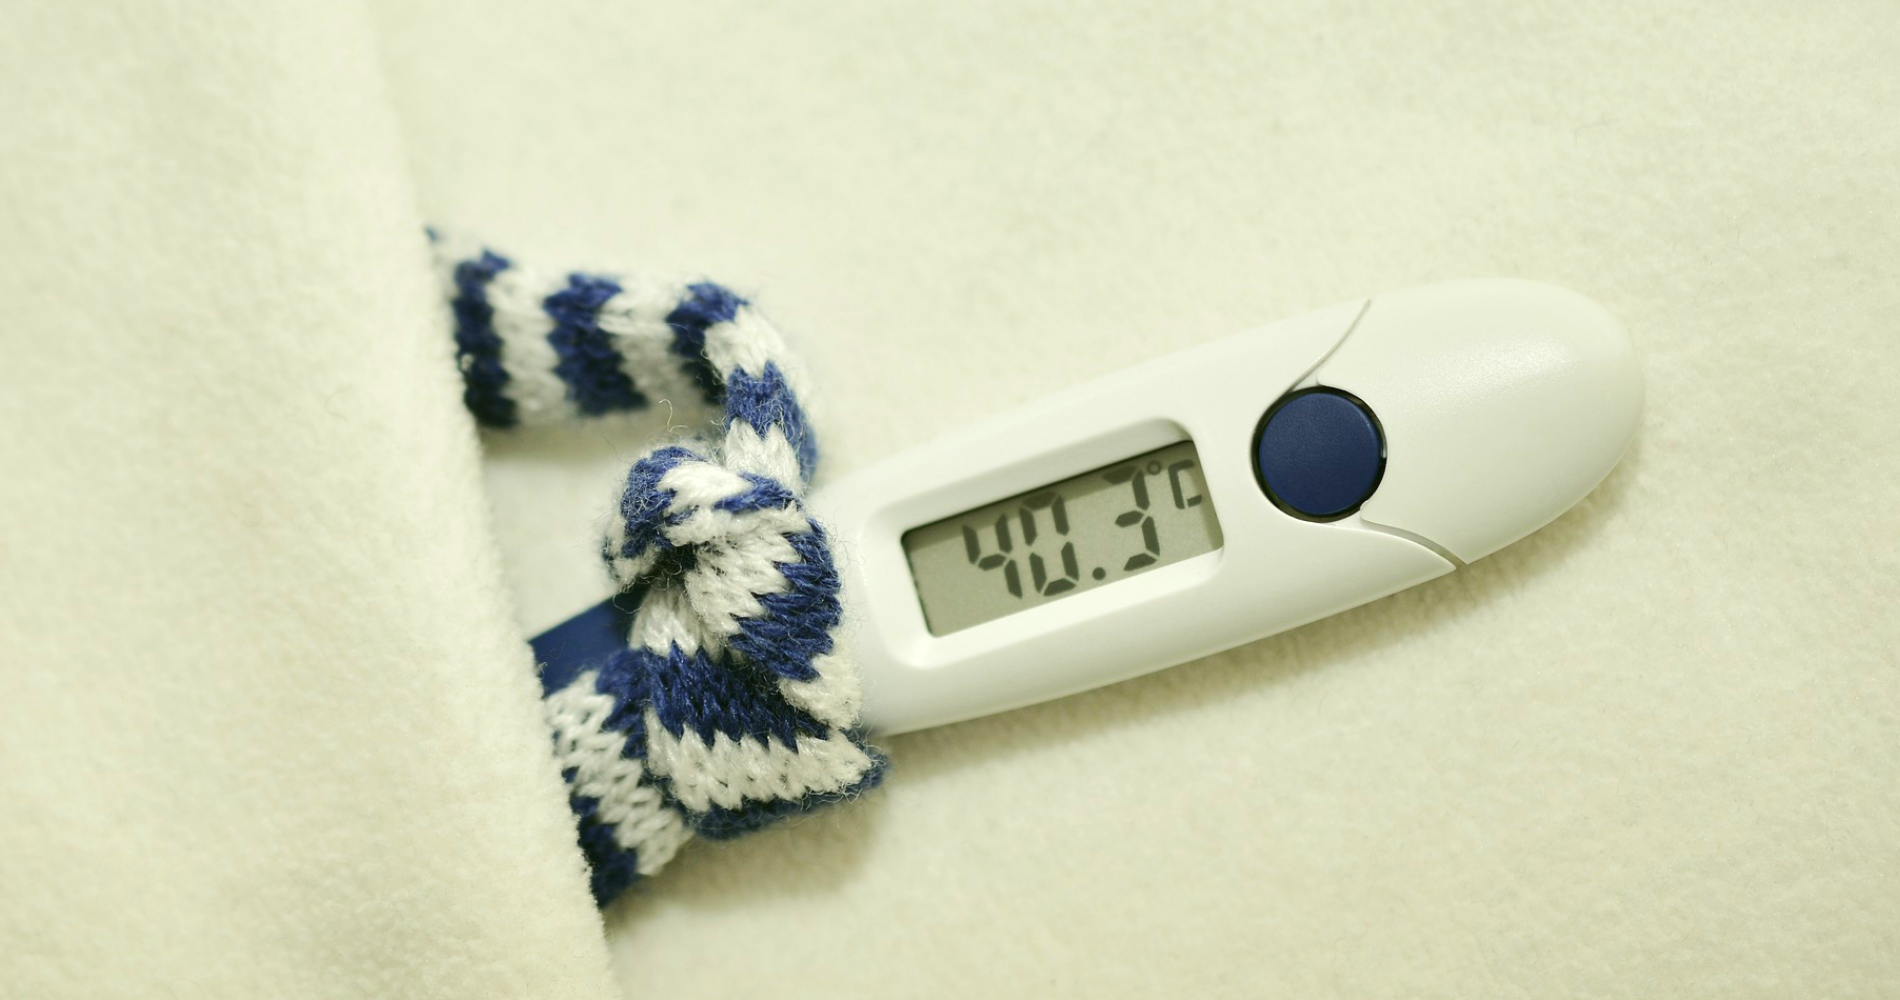 gorączka i domowe sposoby na obniżenie gorączki eDrNona